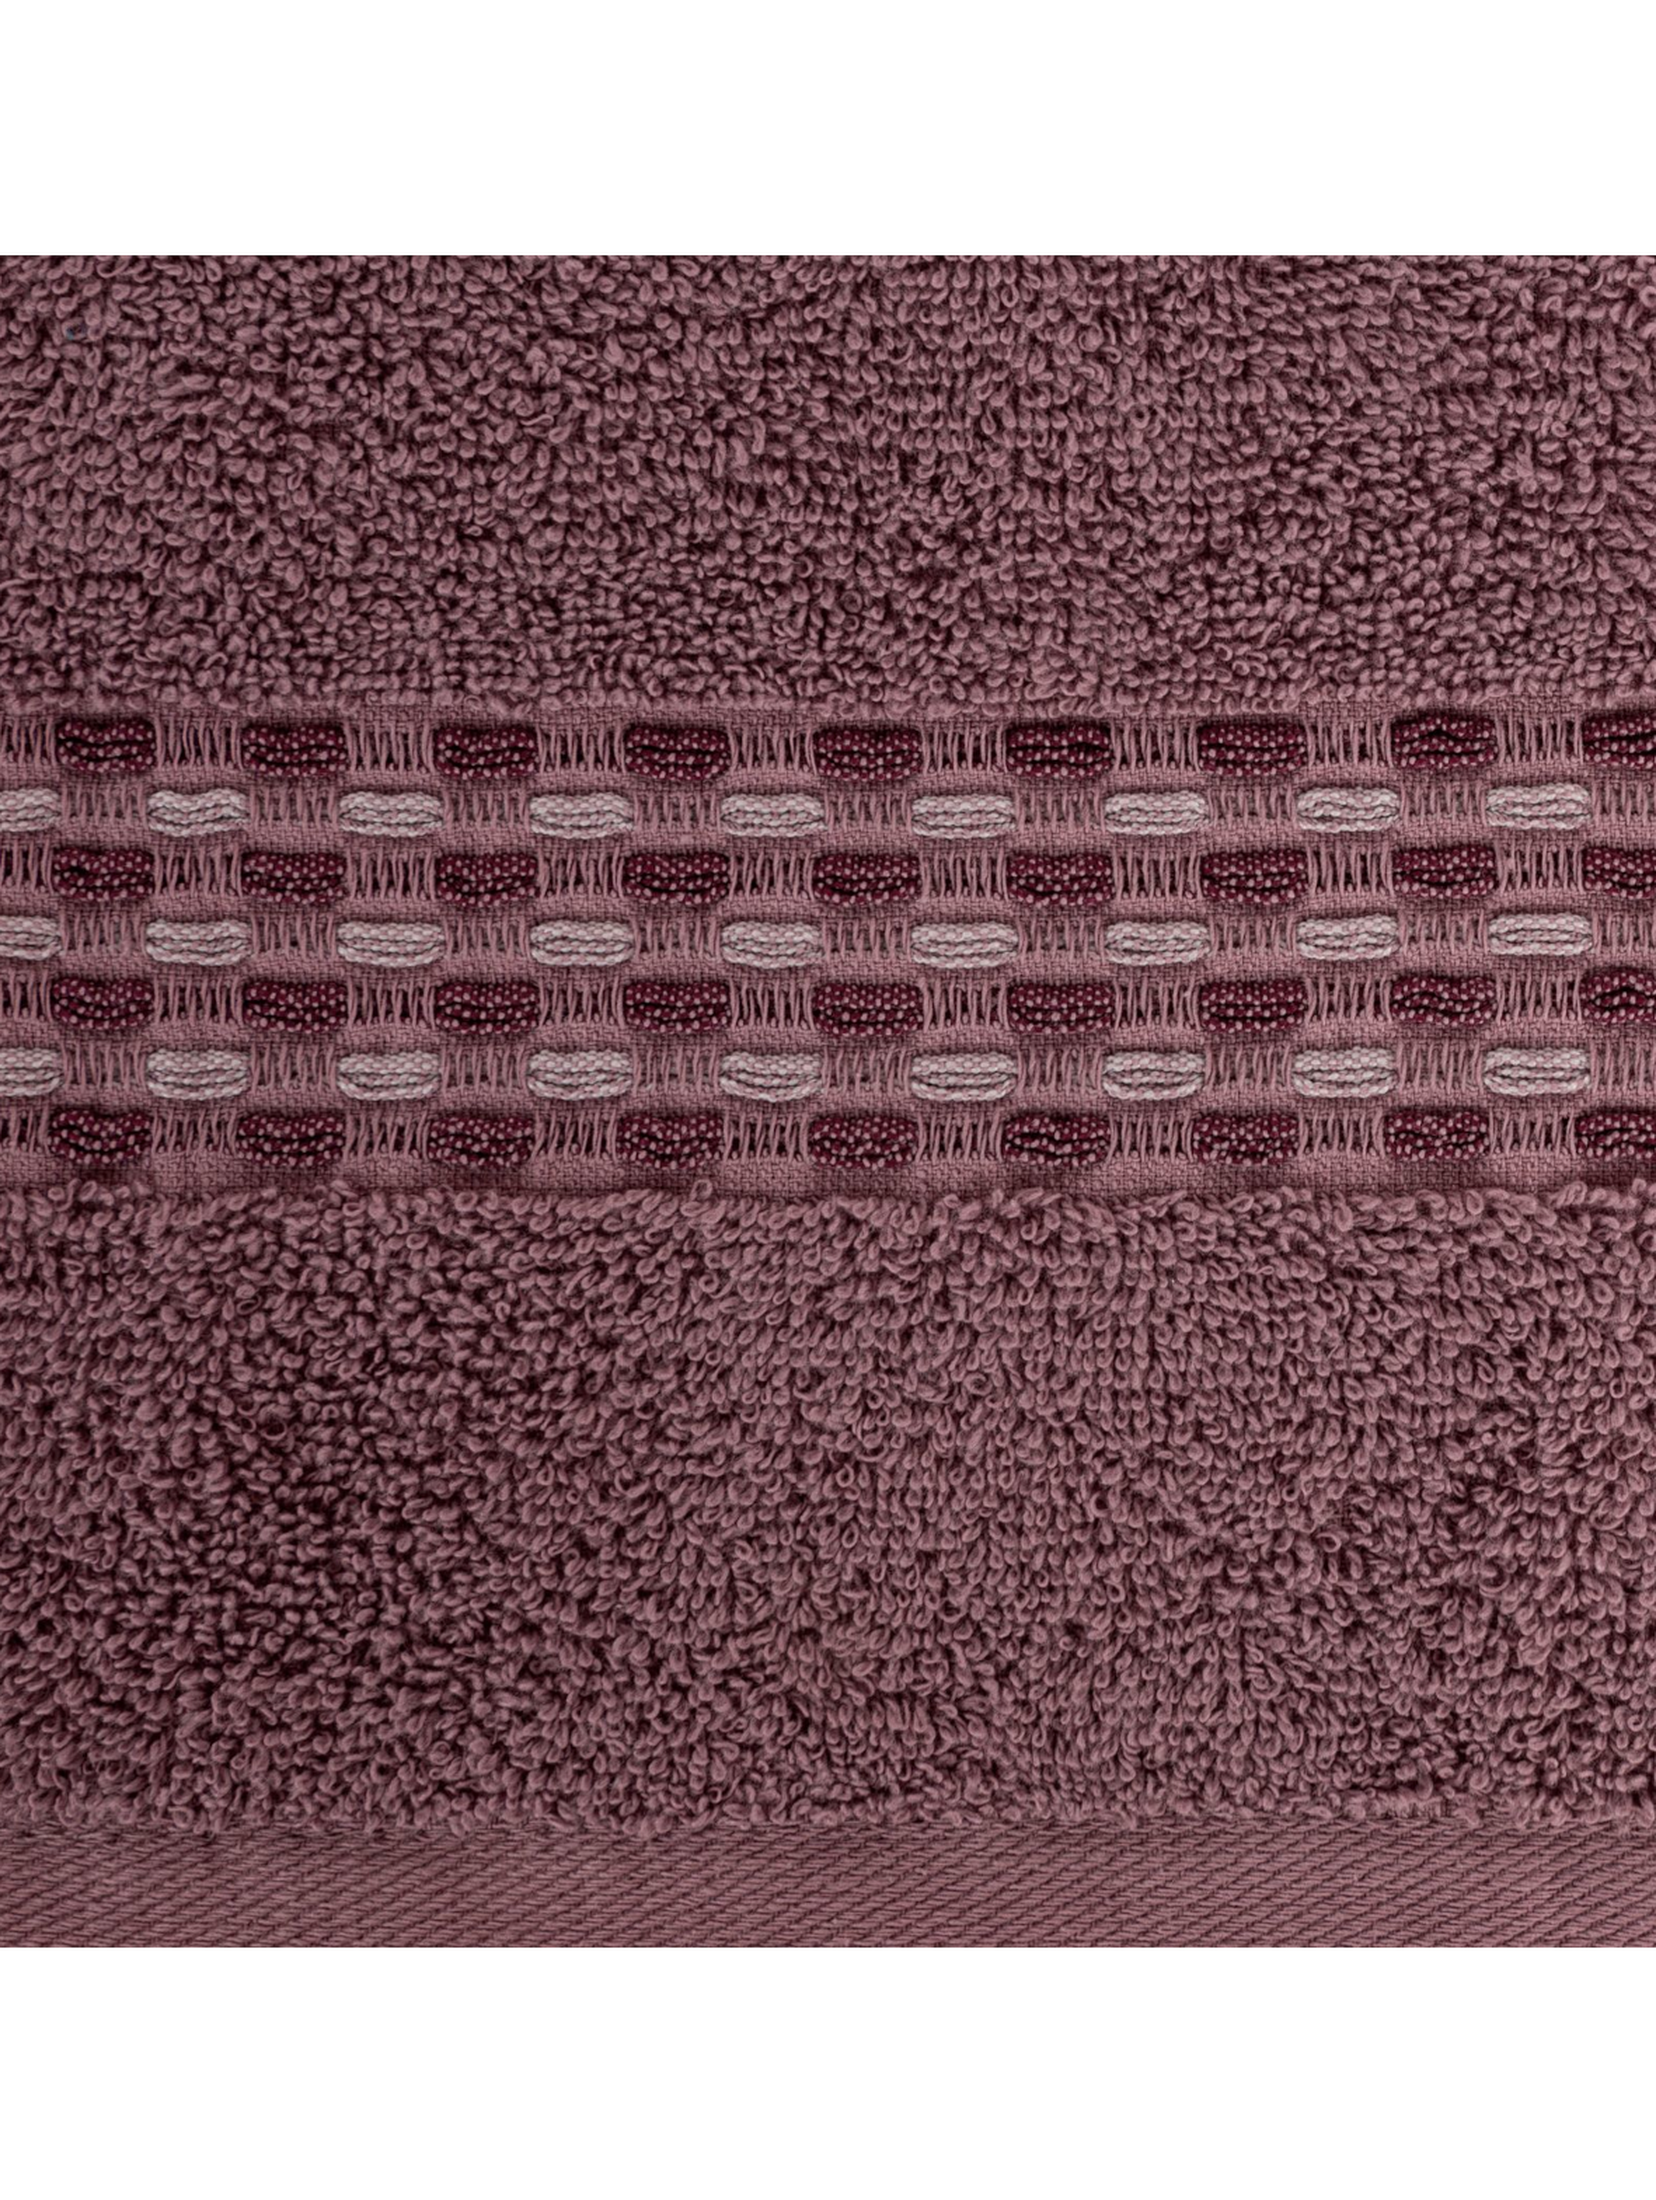 Liliowy ręcznik ze zdobieniami 70x140 cm